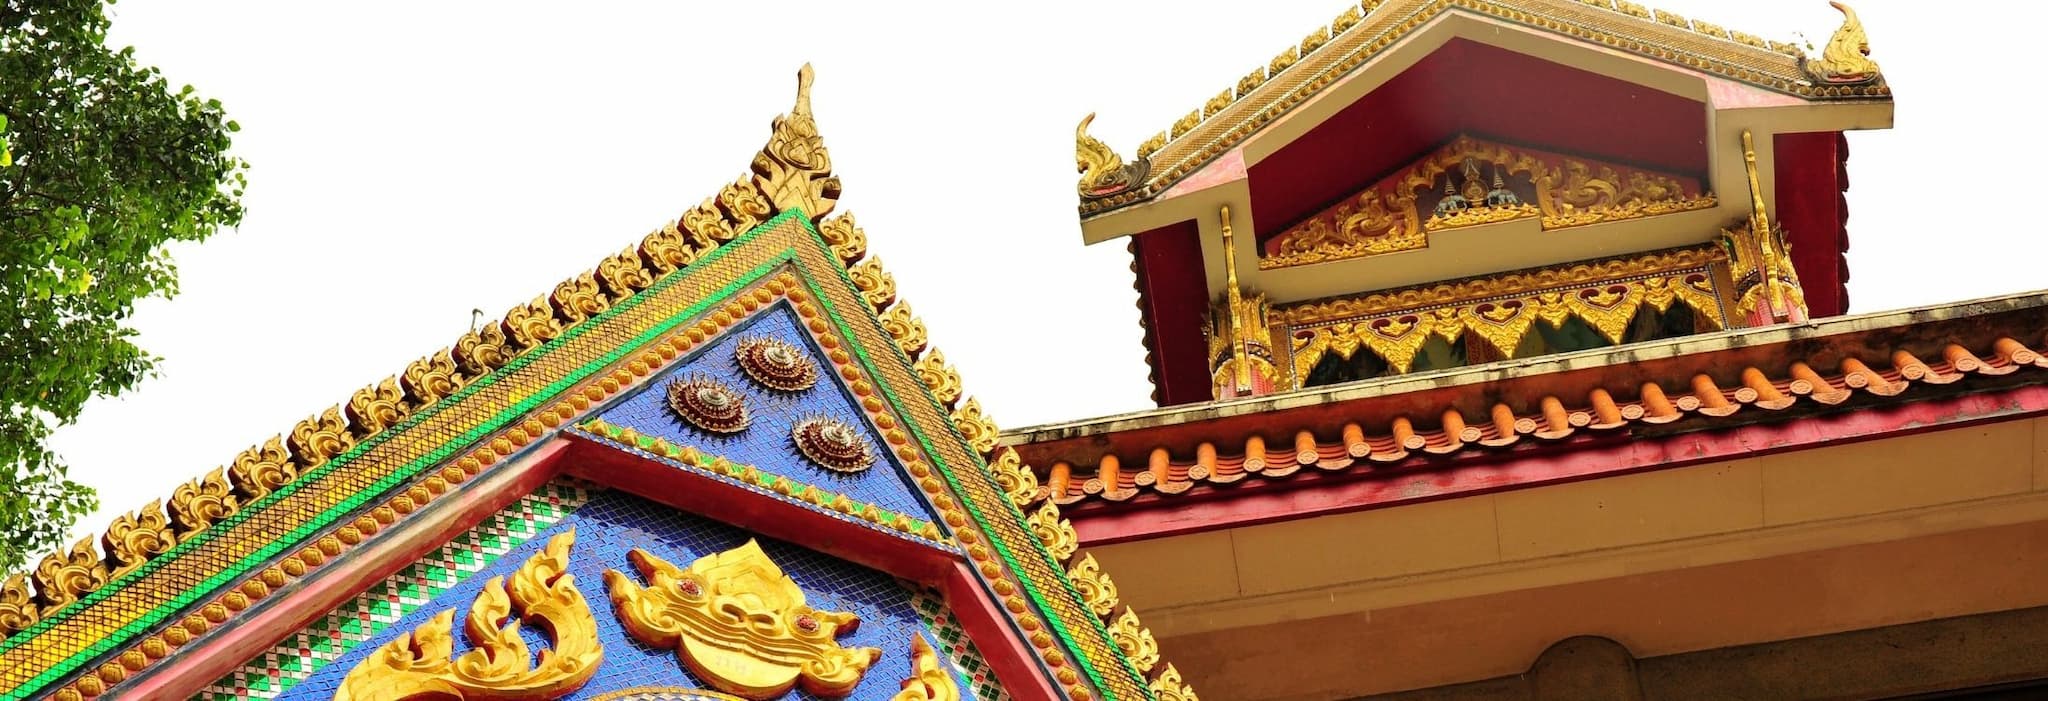 Wat Ananda Metyarama Thai Buddhist Temple